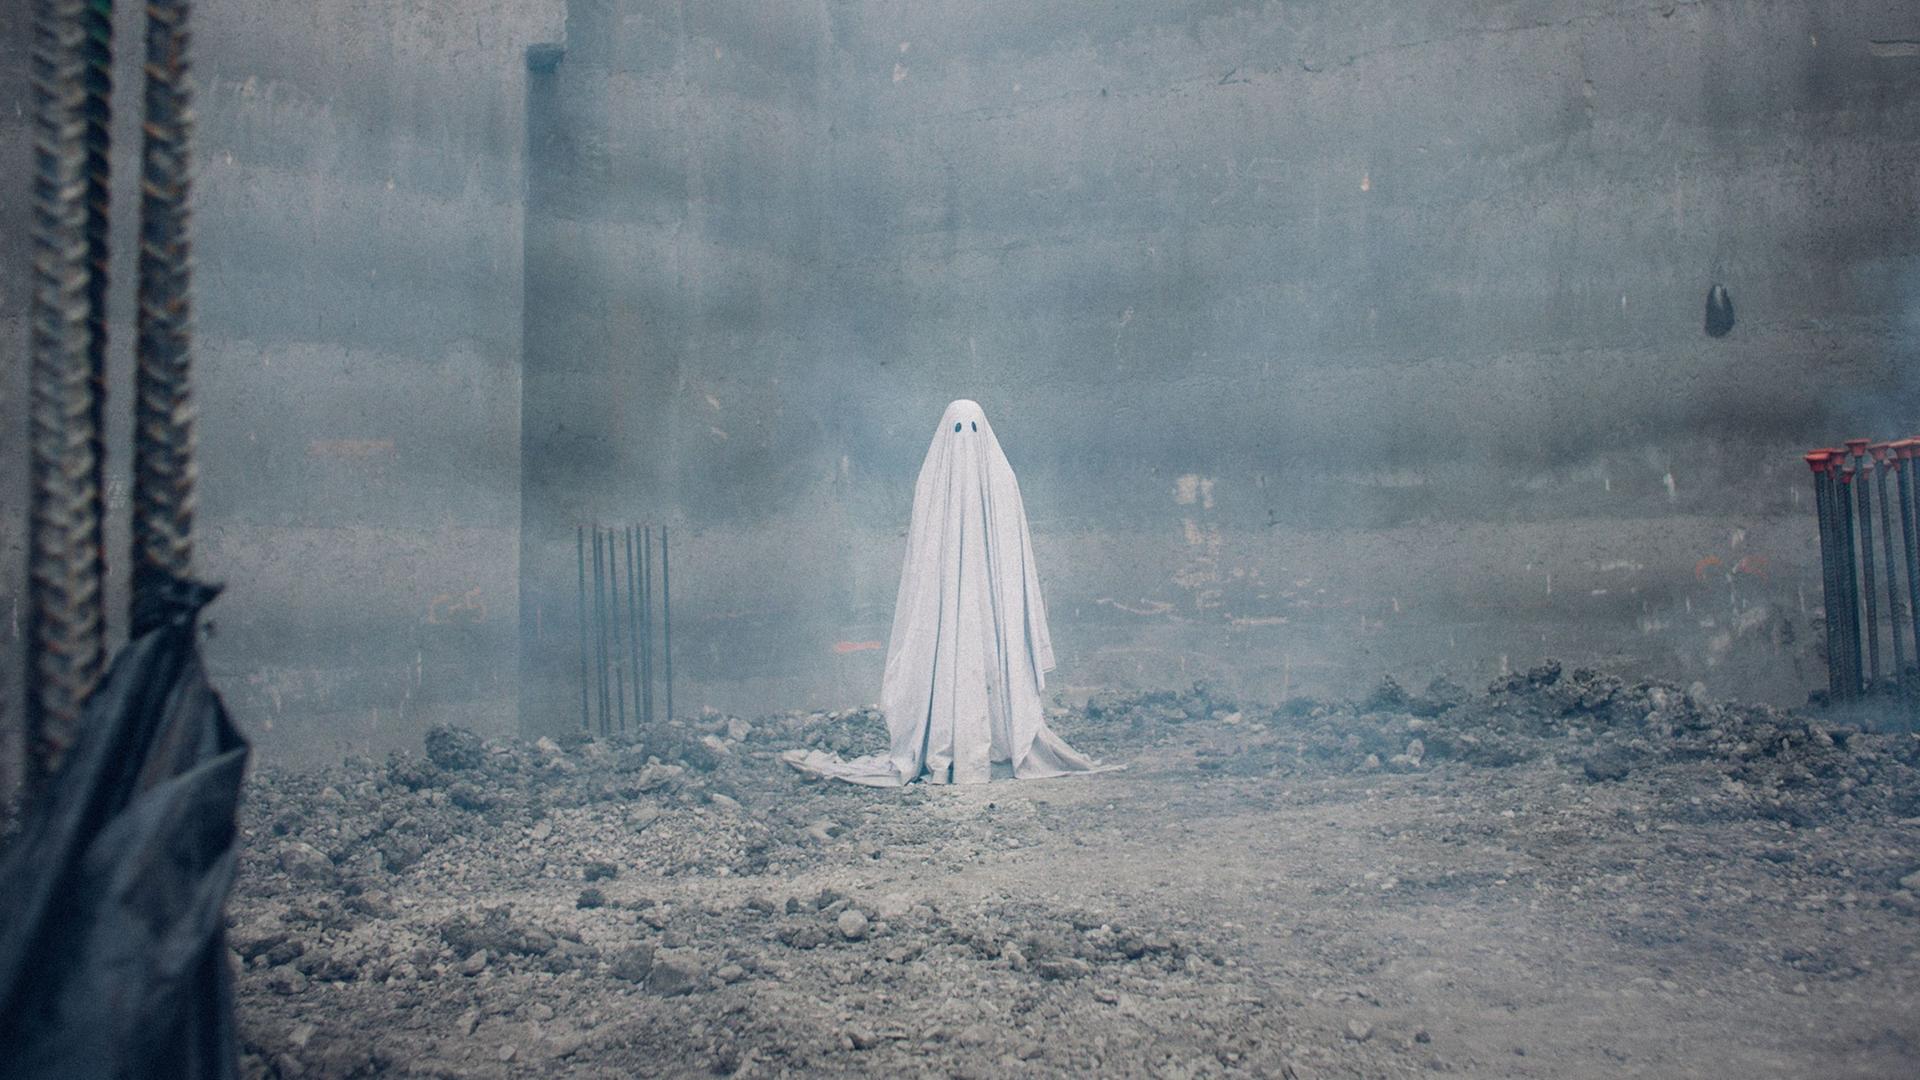 Figur mit Bettlaken und Schlitzen für die Augen als Gespenst. Der Schauspieler Casey Affleck in dem US-amerikanischen Spielfilm "A Ghost Story" aus dem Jahr 2017